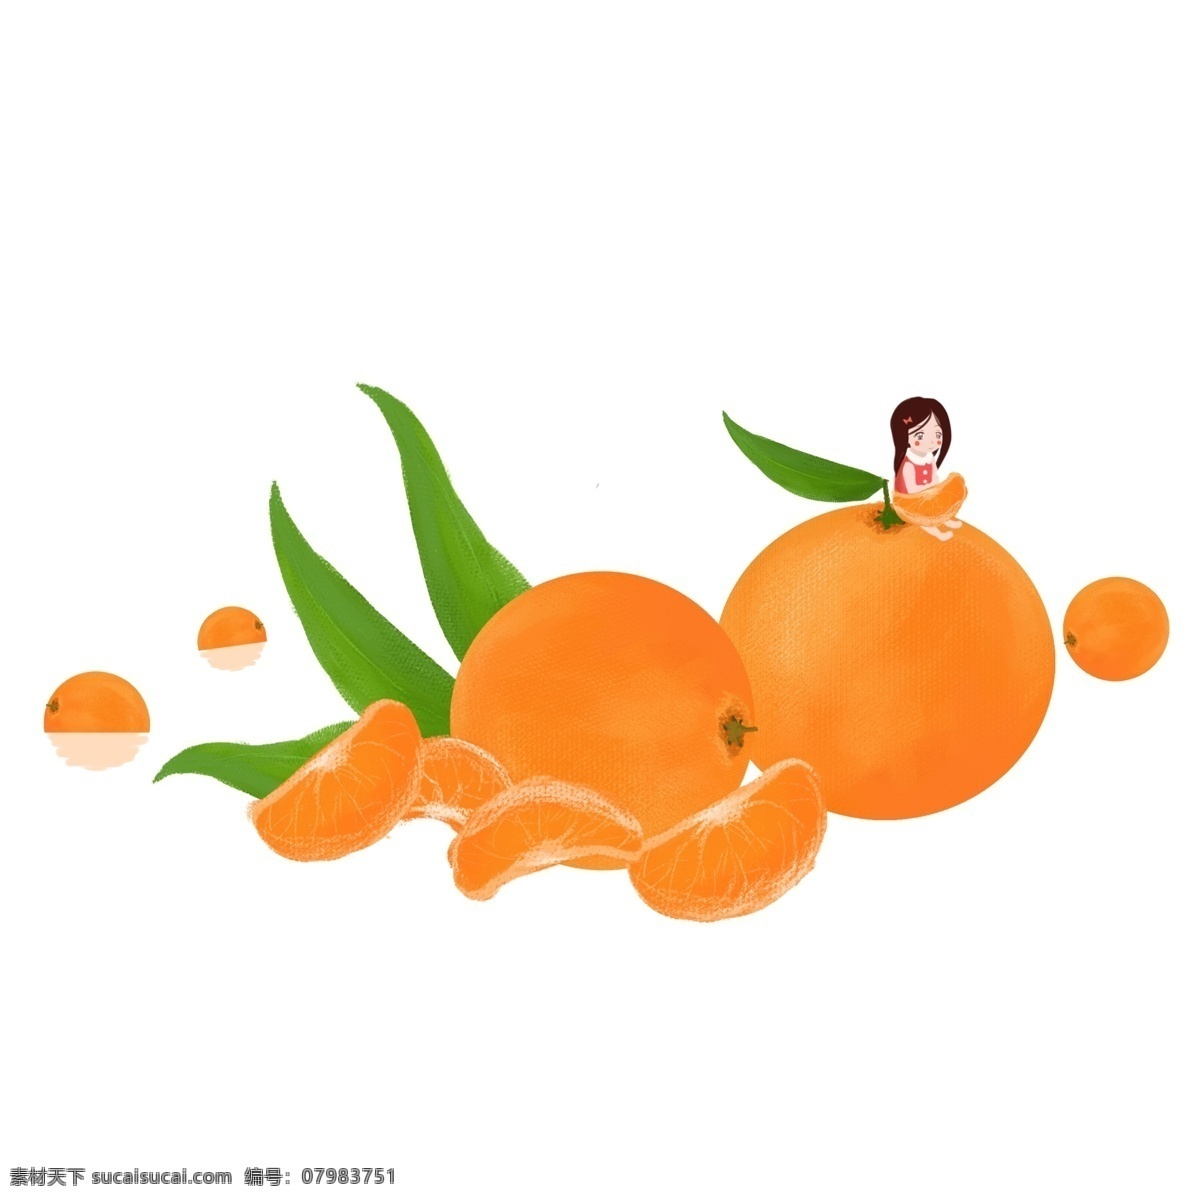 手绘 橘子 设计素材 插画 水果 美食